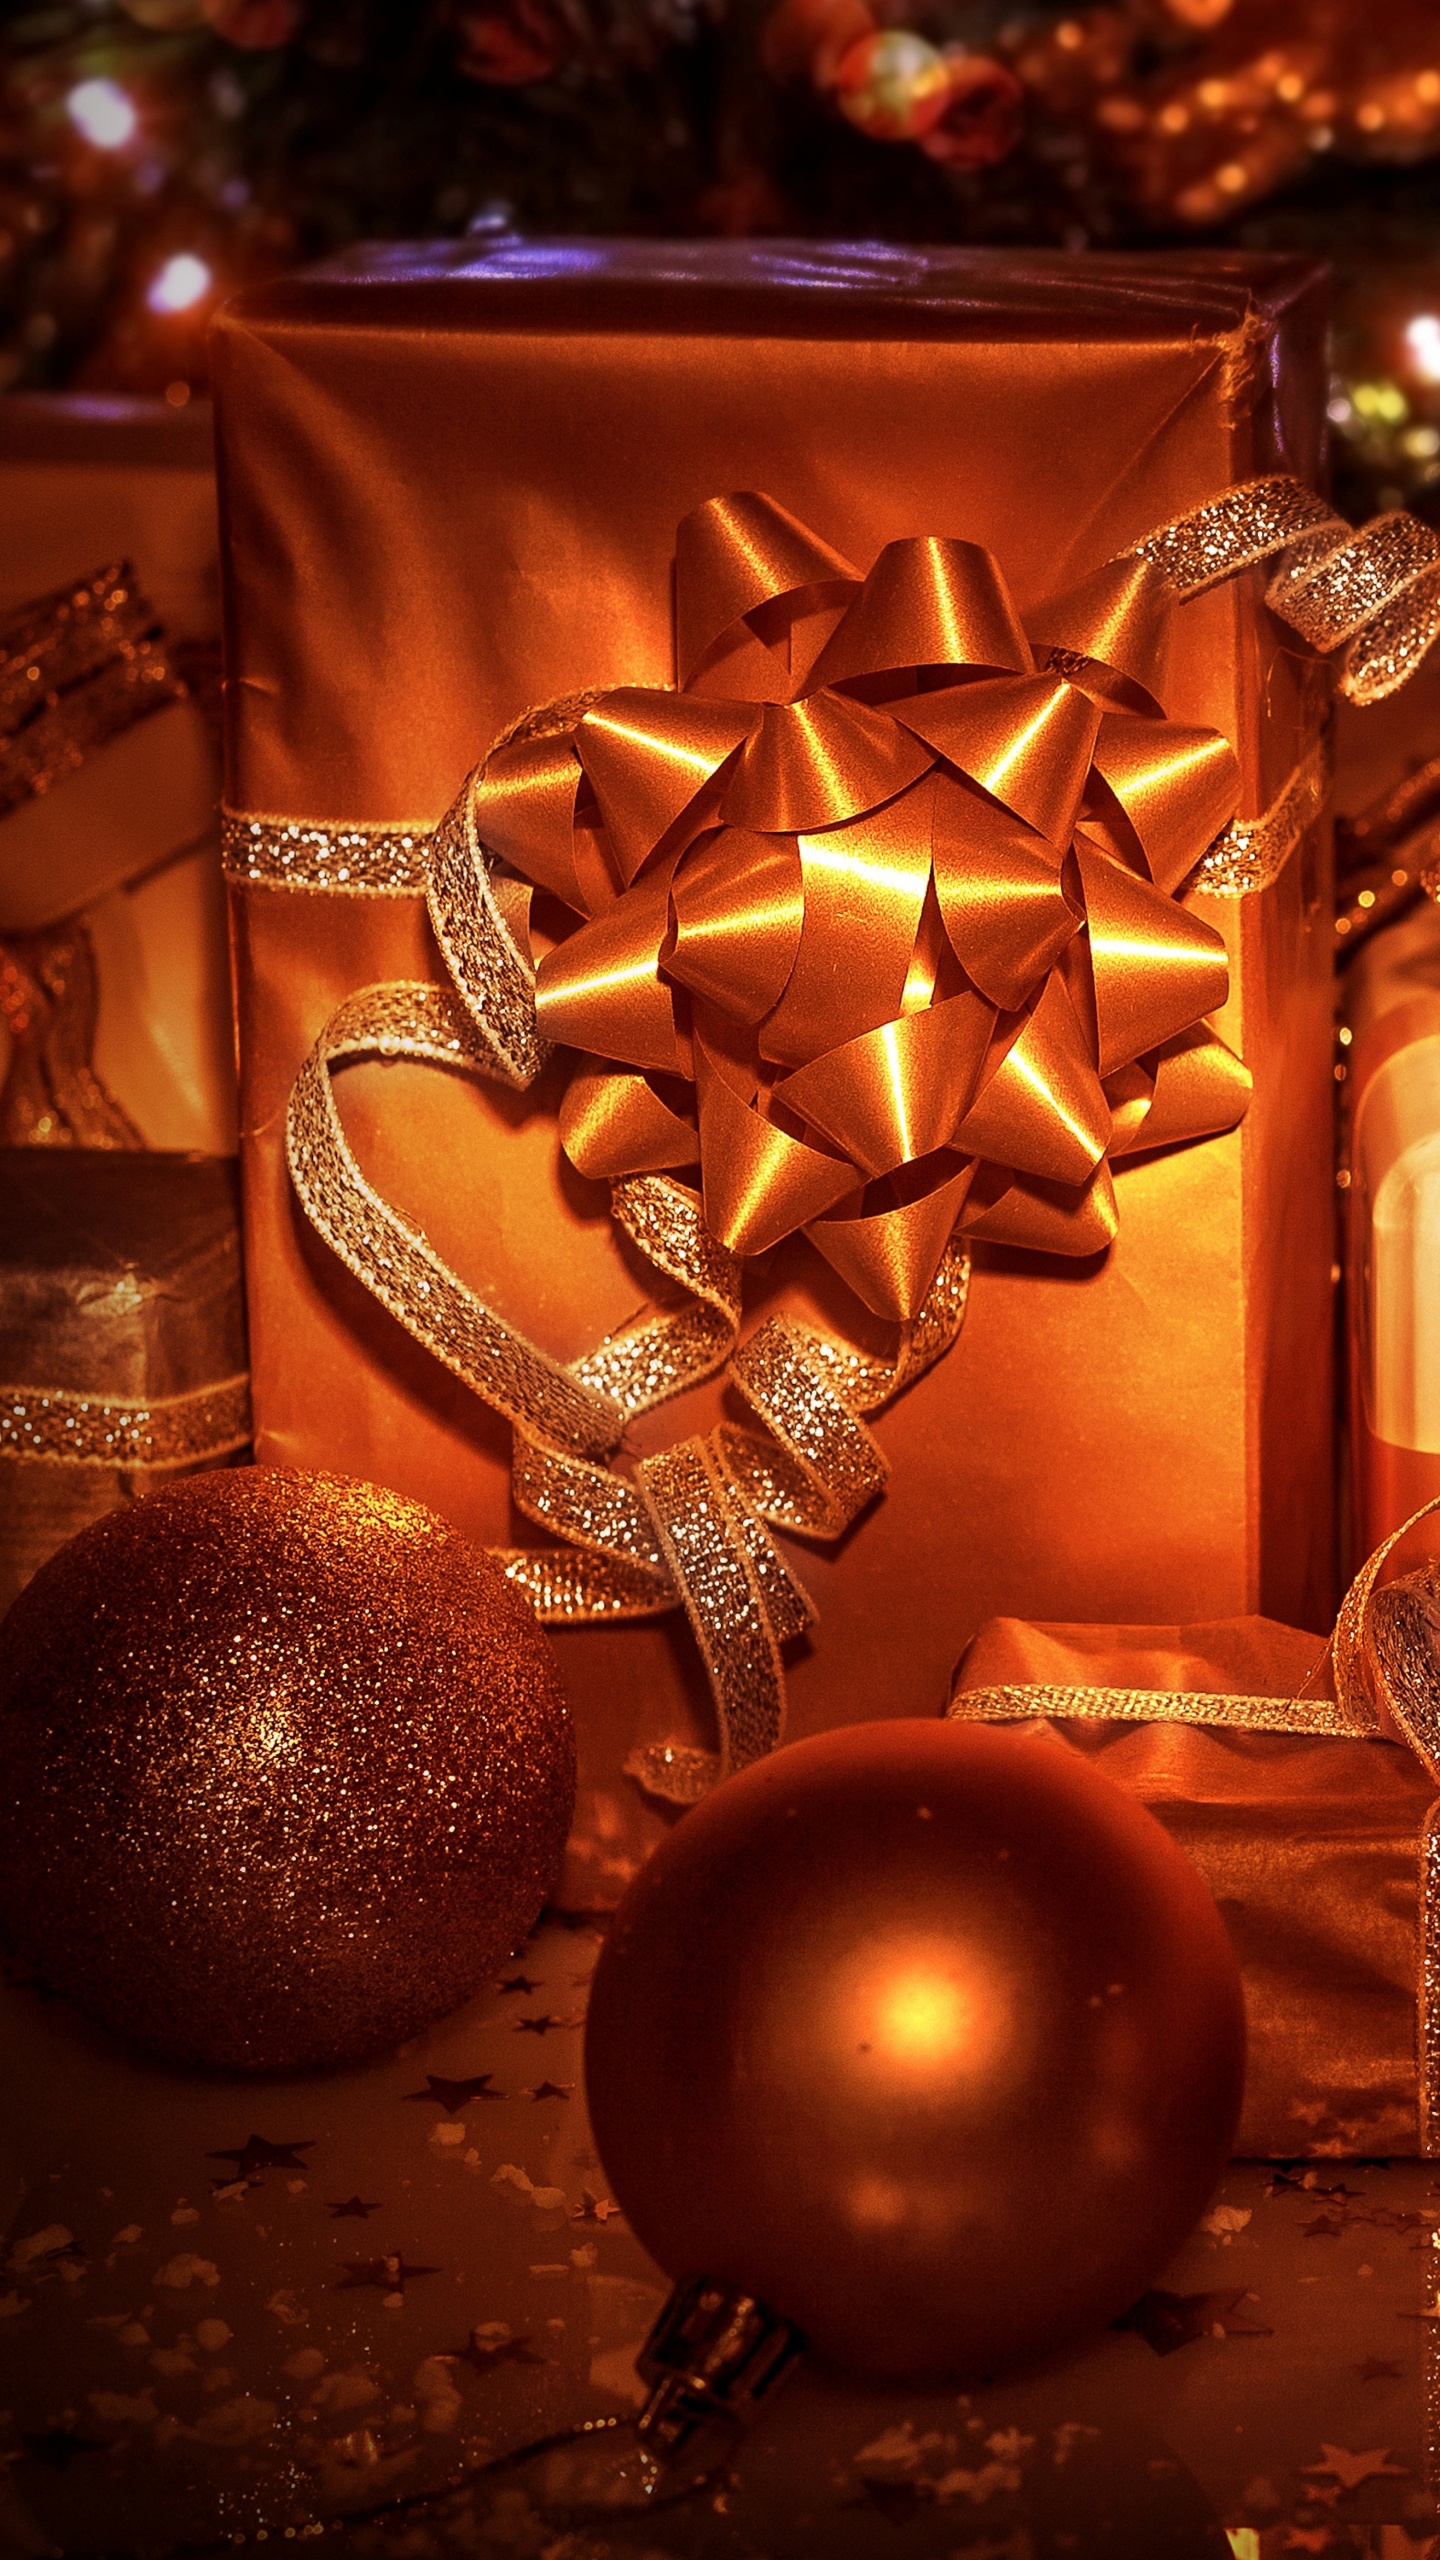 圣诞节那天, 圣诞节的装饰品, 圣诞树, 新的一年, 圣诞装饰 壁纸 1440x2560 允许